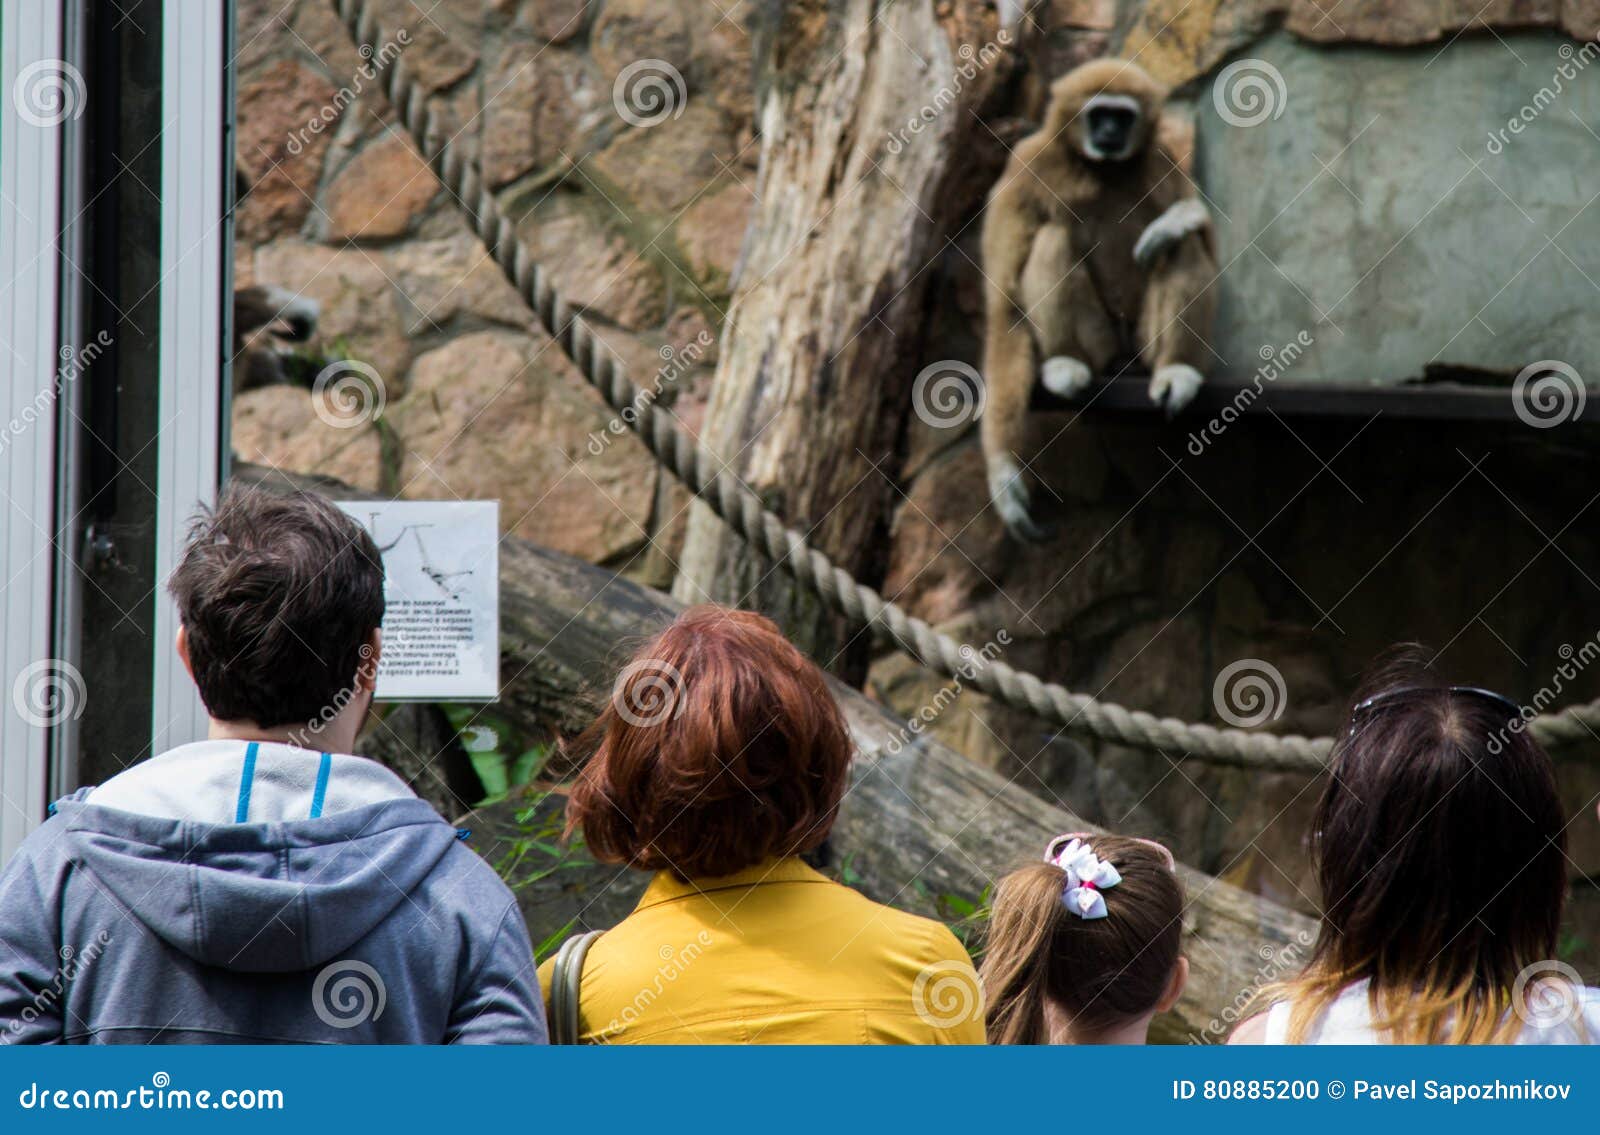 Наблюдать обезьяна. Наблюдают за обезьянами в зоопарке. Люди вокруг обезьяна в зоопарке. Обезьяна и человек в зоопарке.